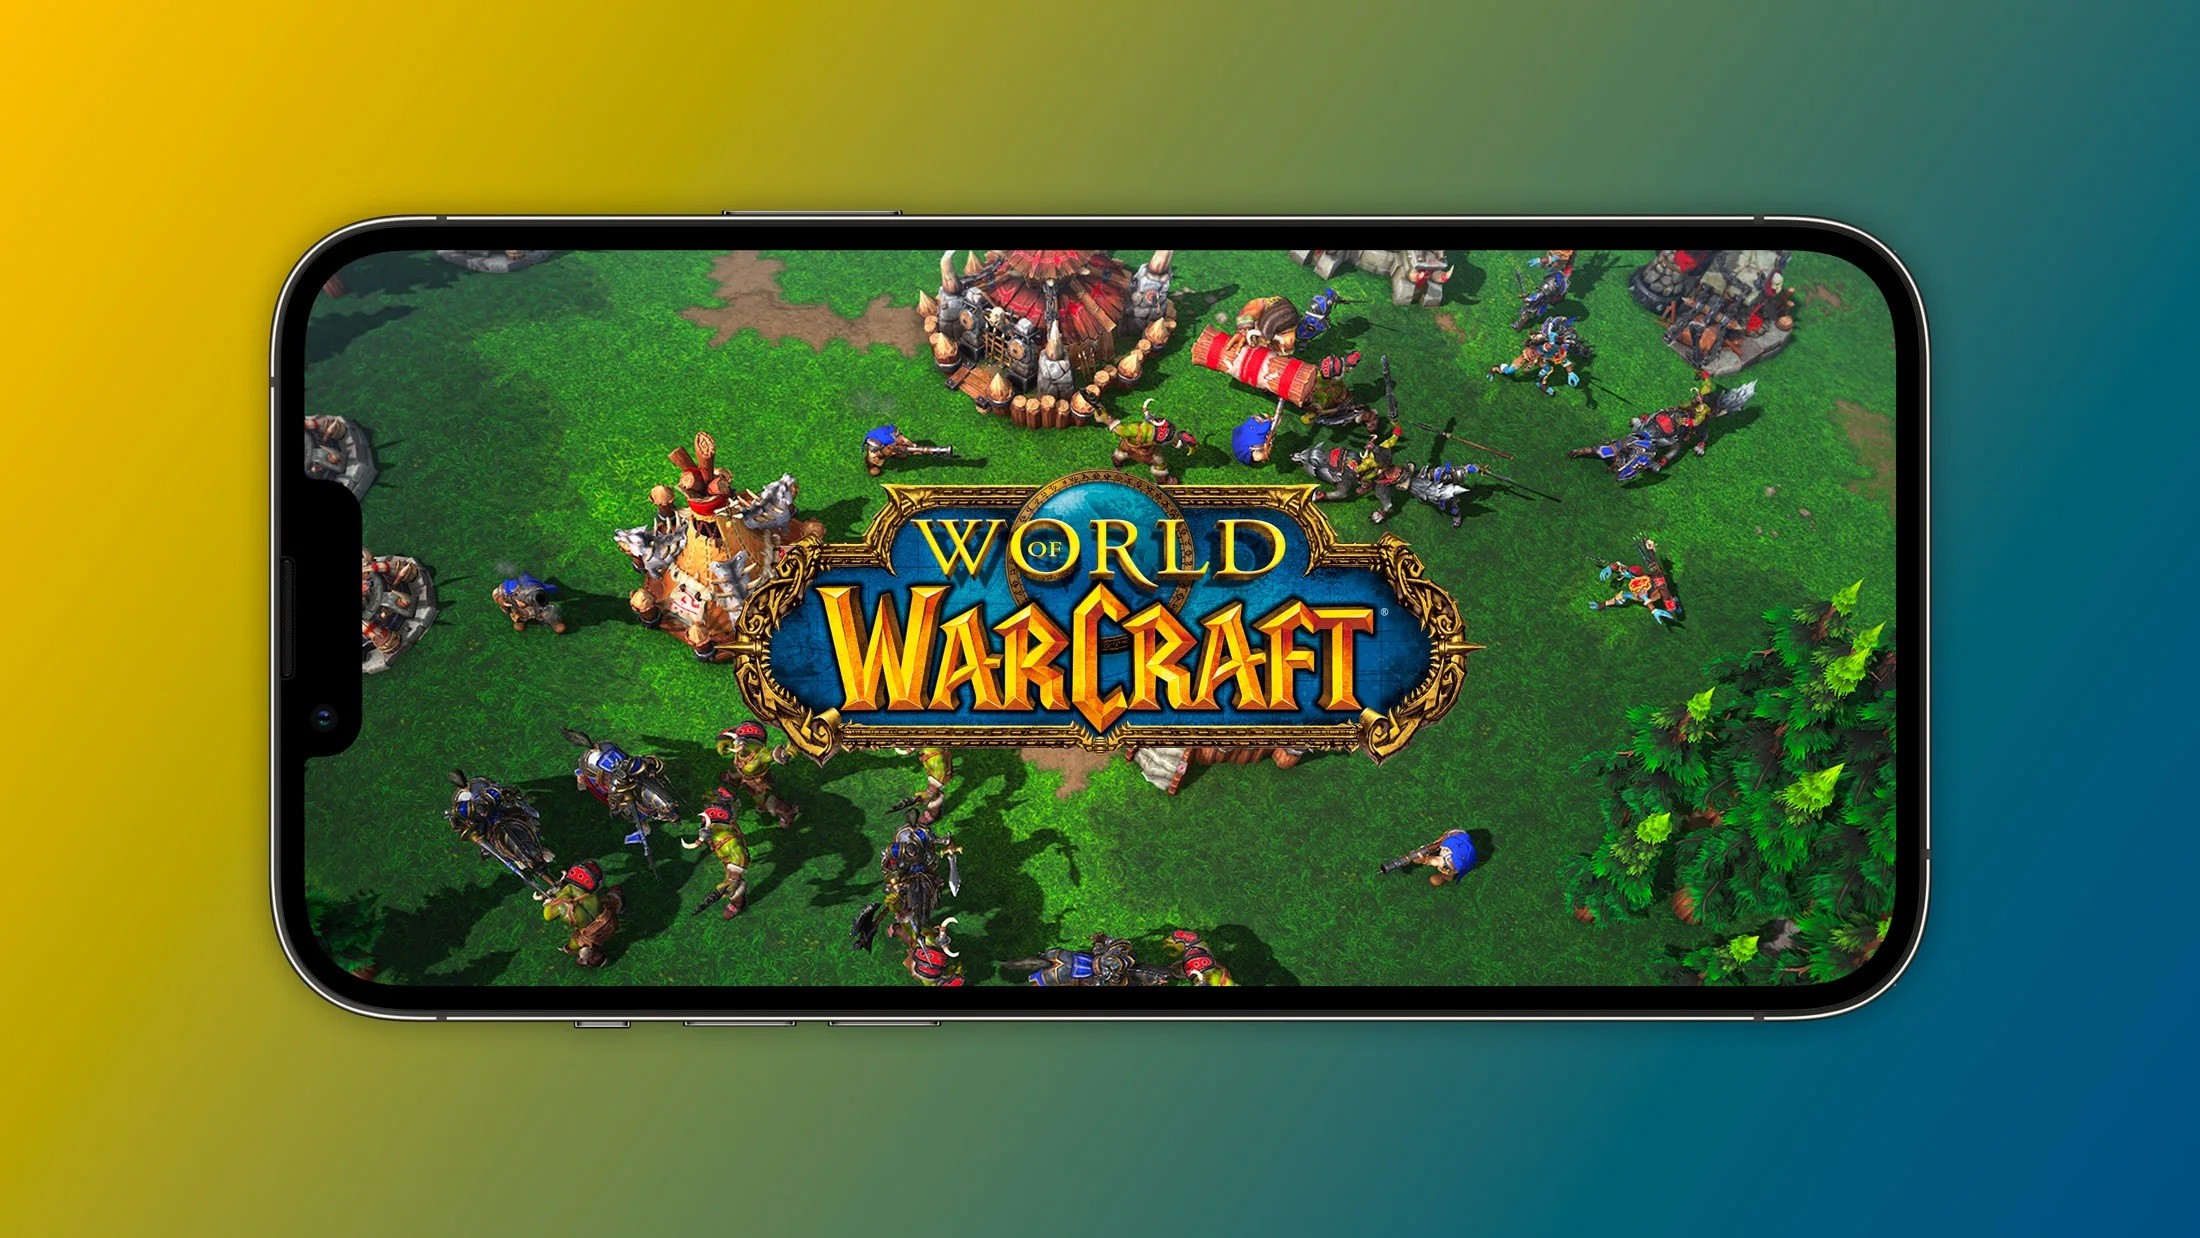 Mobilnego Warcrafta poznamy 3 maja! A co z przyszłością tego klasycznego?